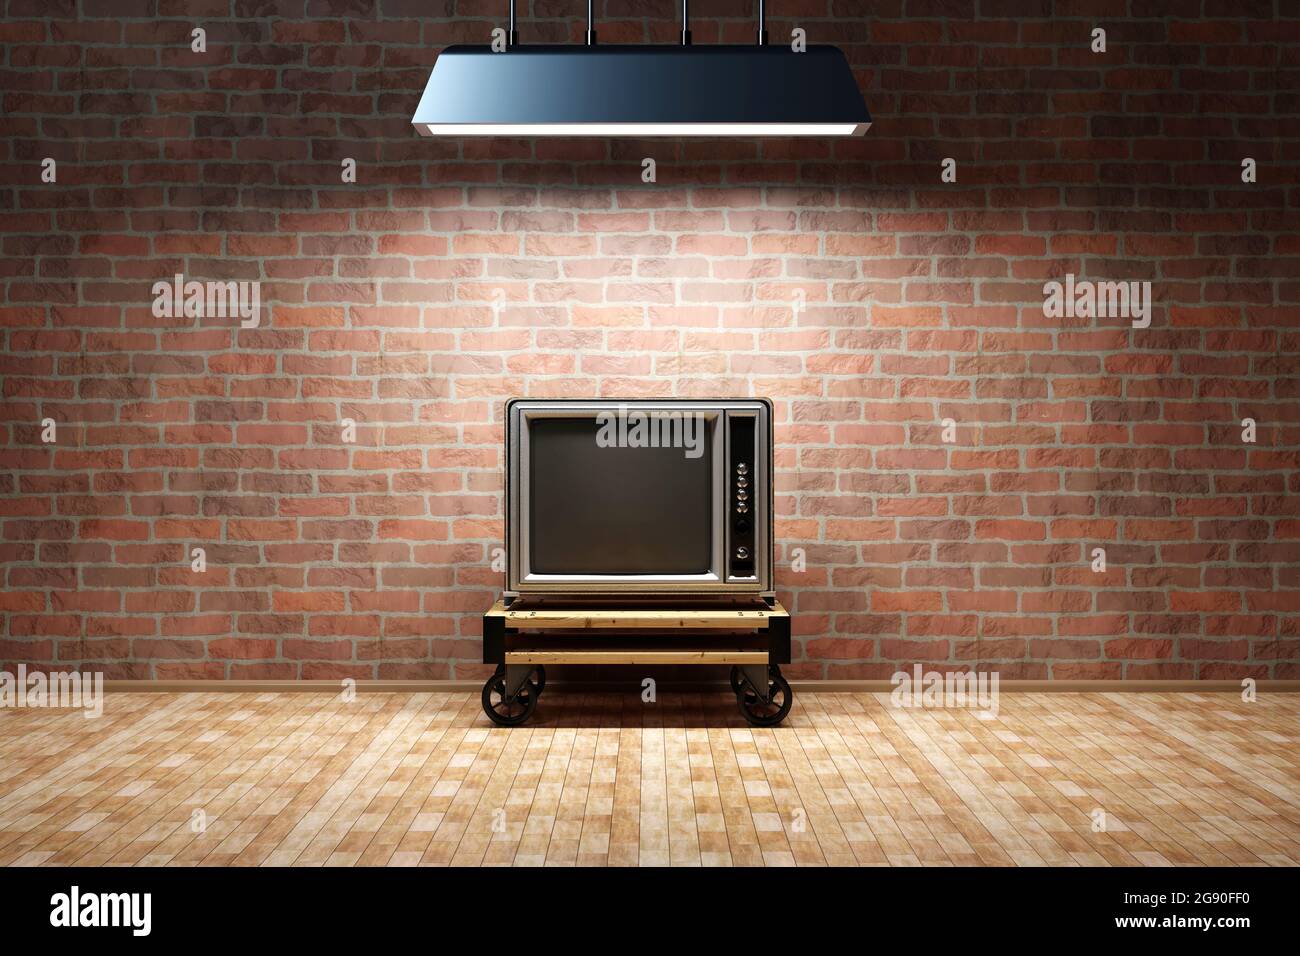 Rendu tridimensionnel d'un téléviseur à l'ancienne dans une pièce vide avec un mur de briques Banque D'Images